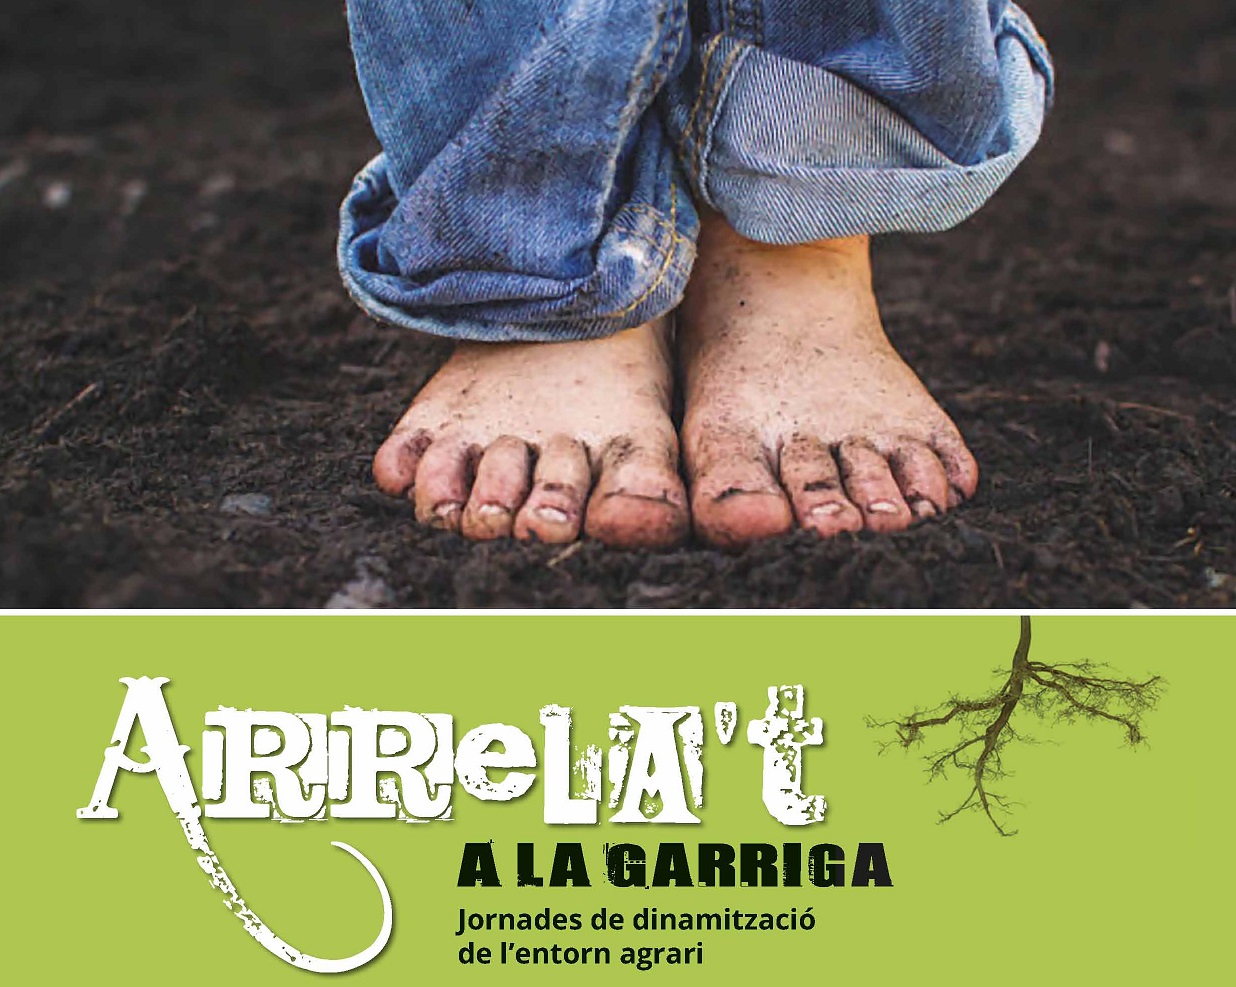 Propostes d'acció del projecte Arrela't